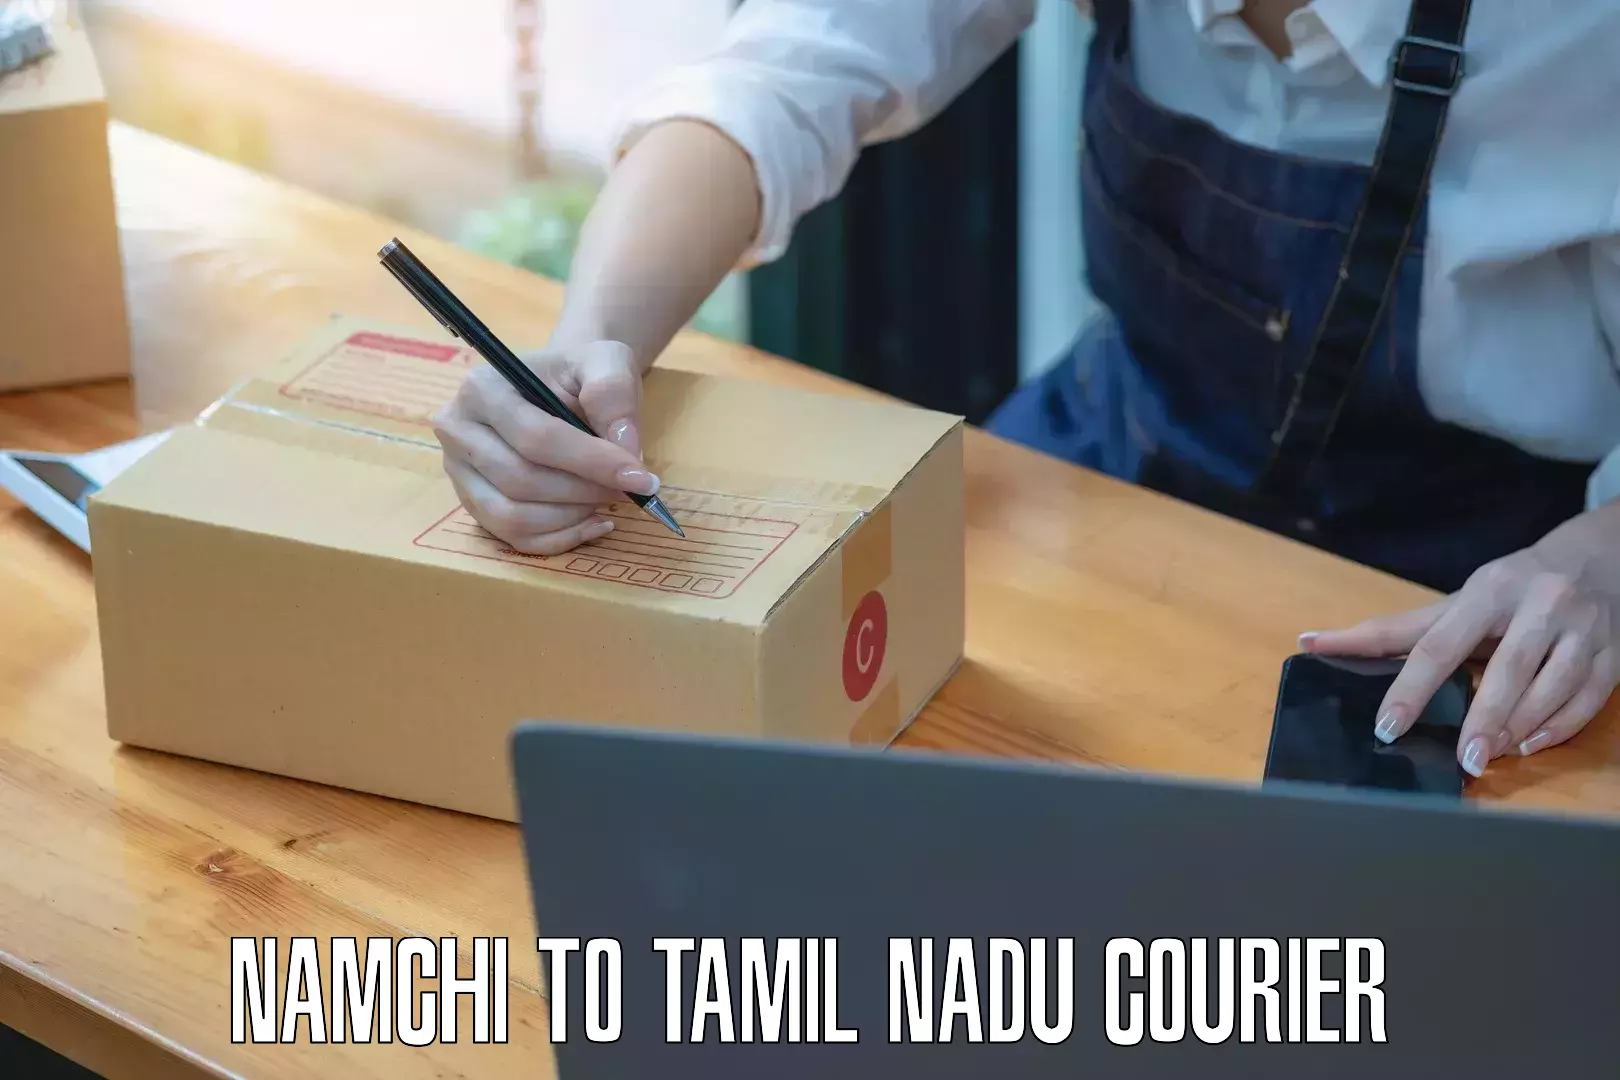 Door-to-door freight service Namchi to Tamil Nadu